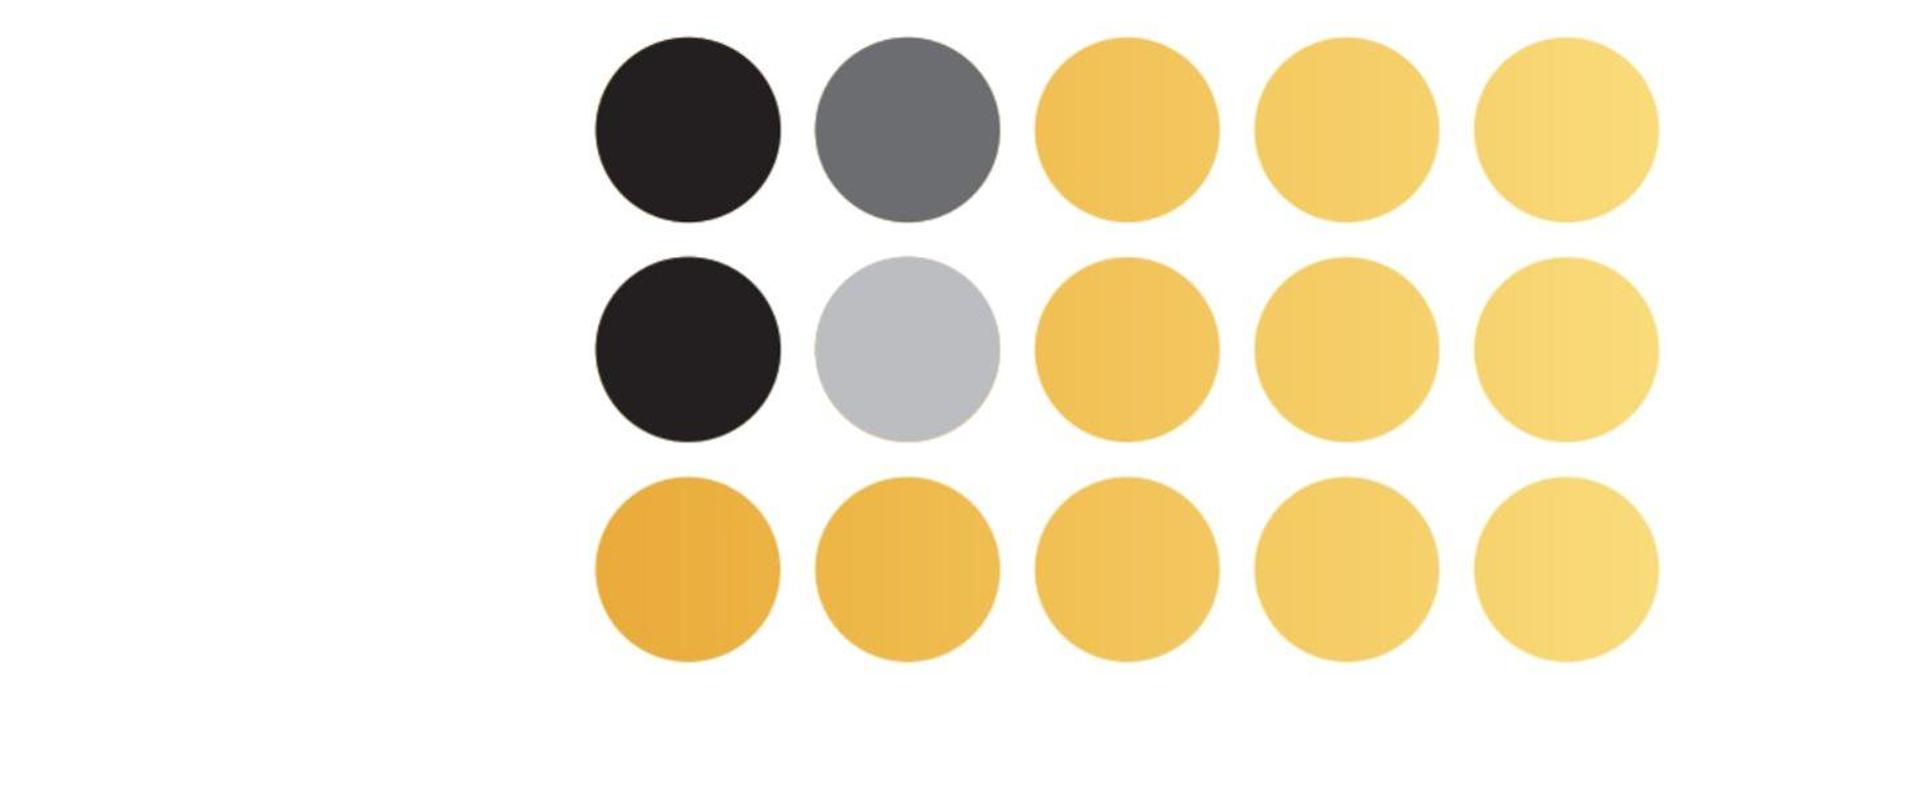 Obraz przedstawia kółka w trzech kolorach: żółtym, szarym oraz czarnym.